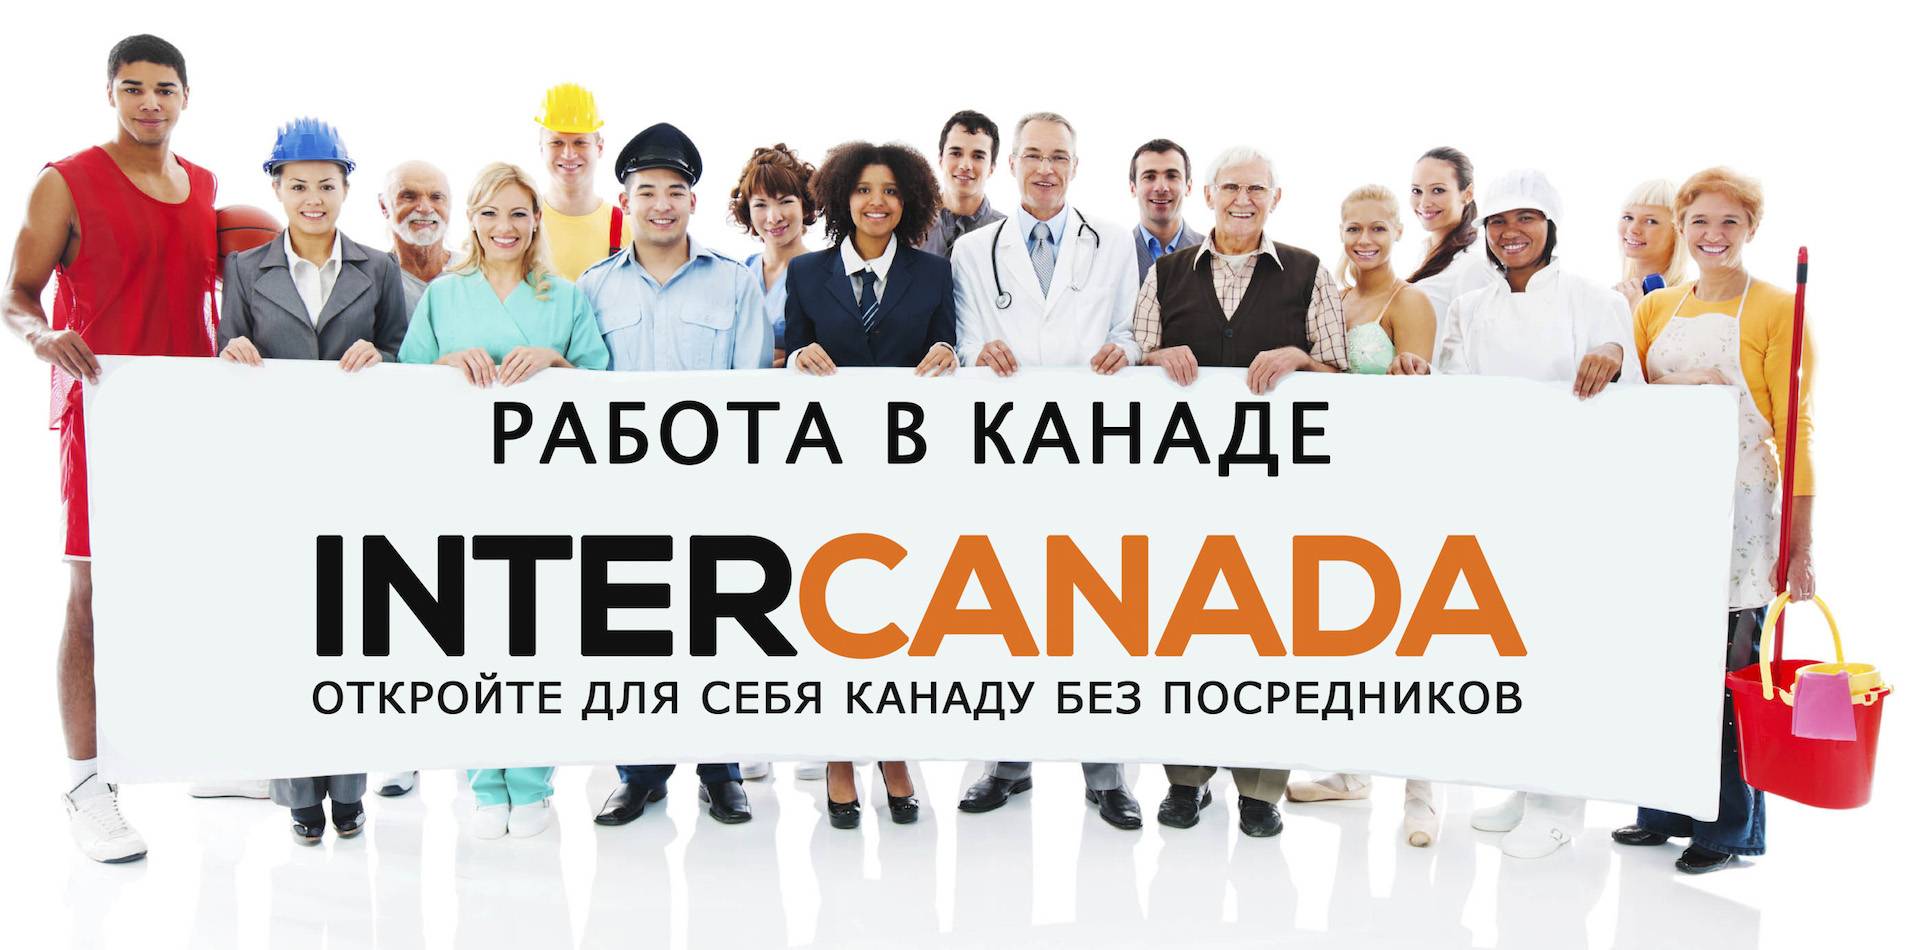 Подробно о поиске работы в канаде: способы, агентства, сайты вакансий